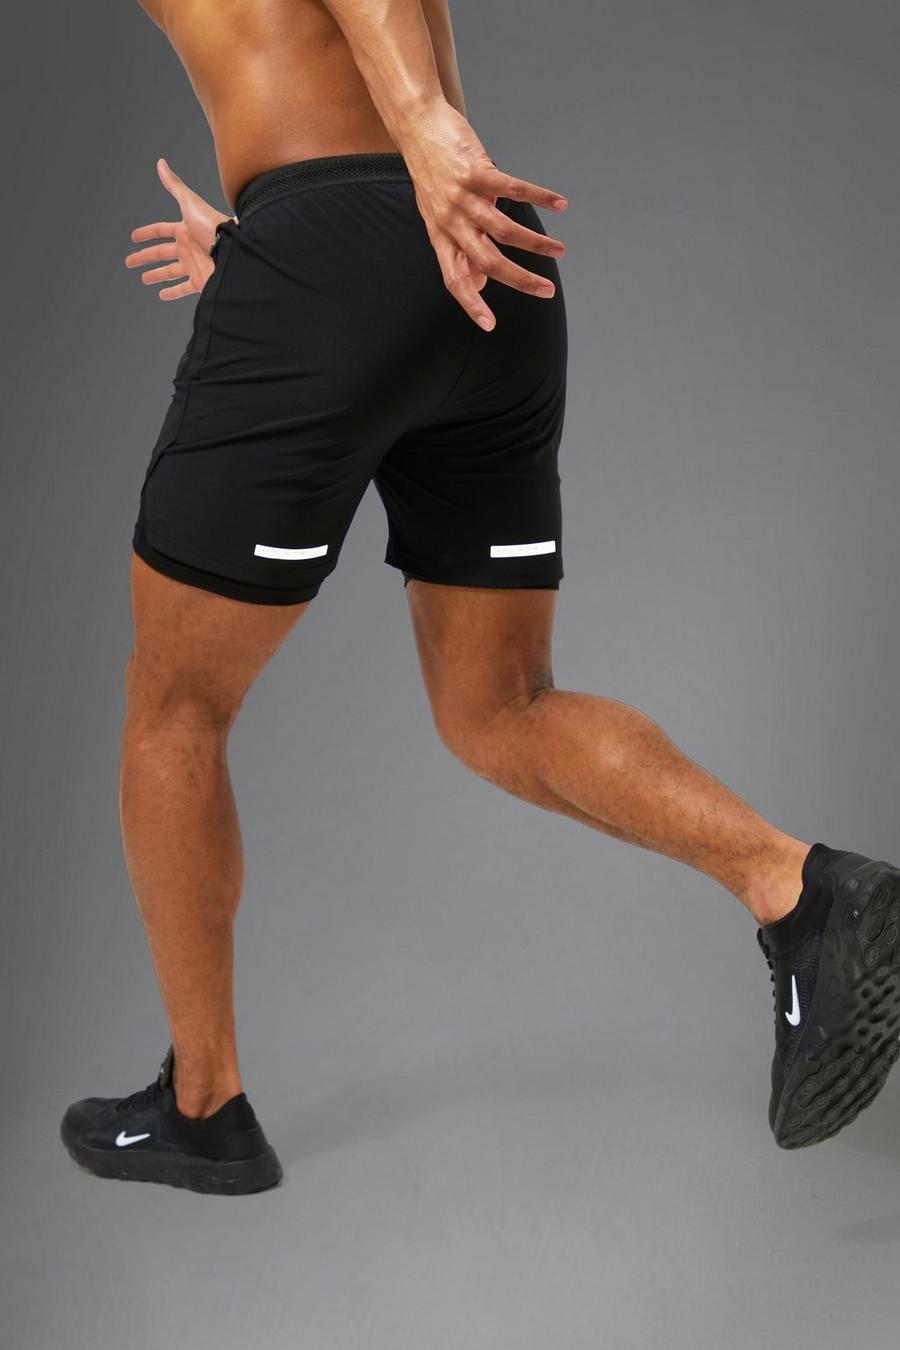 Pantalón corto MAN Active resistente 2 en 1, Black